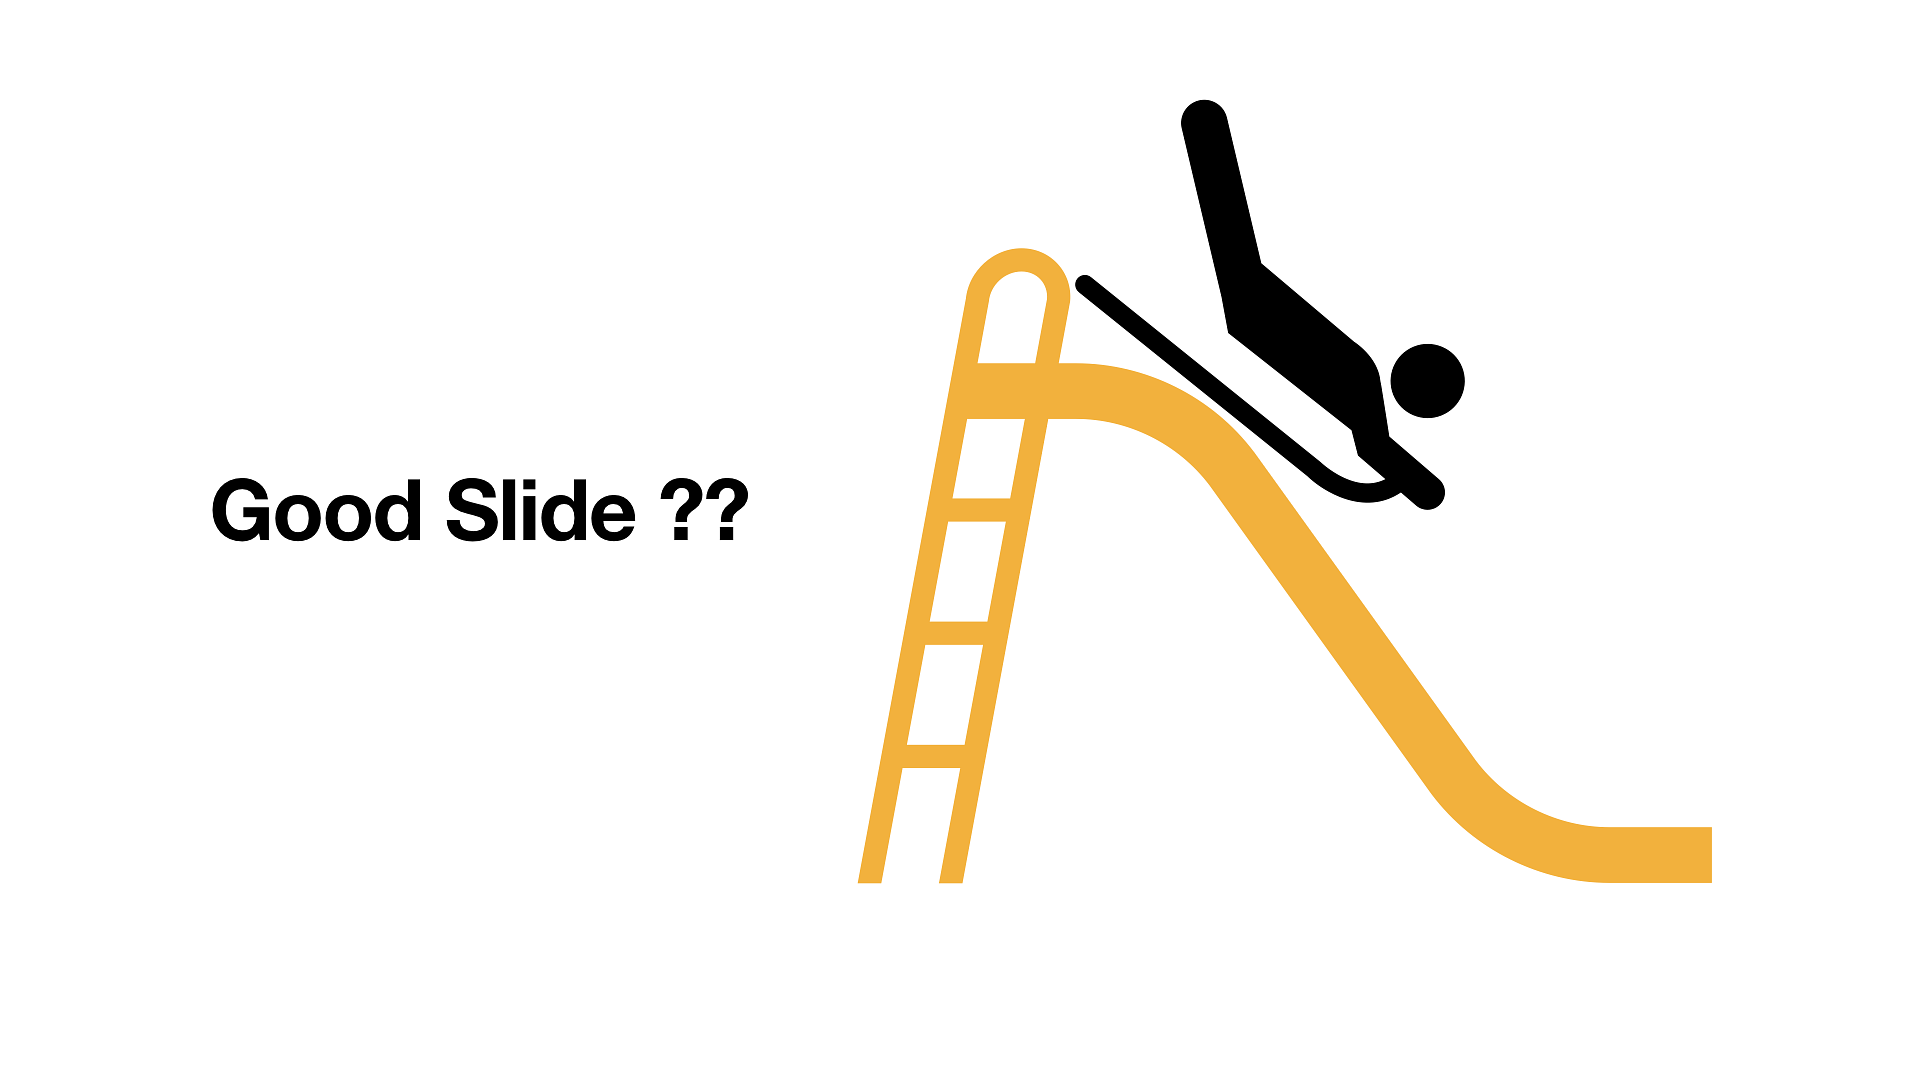 Good Slide ??